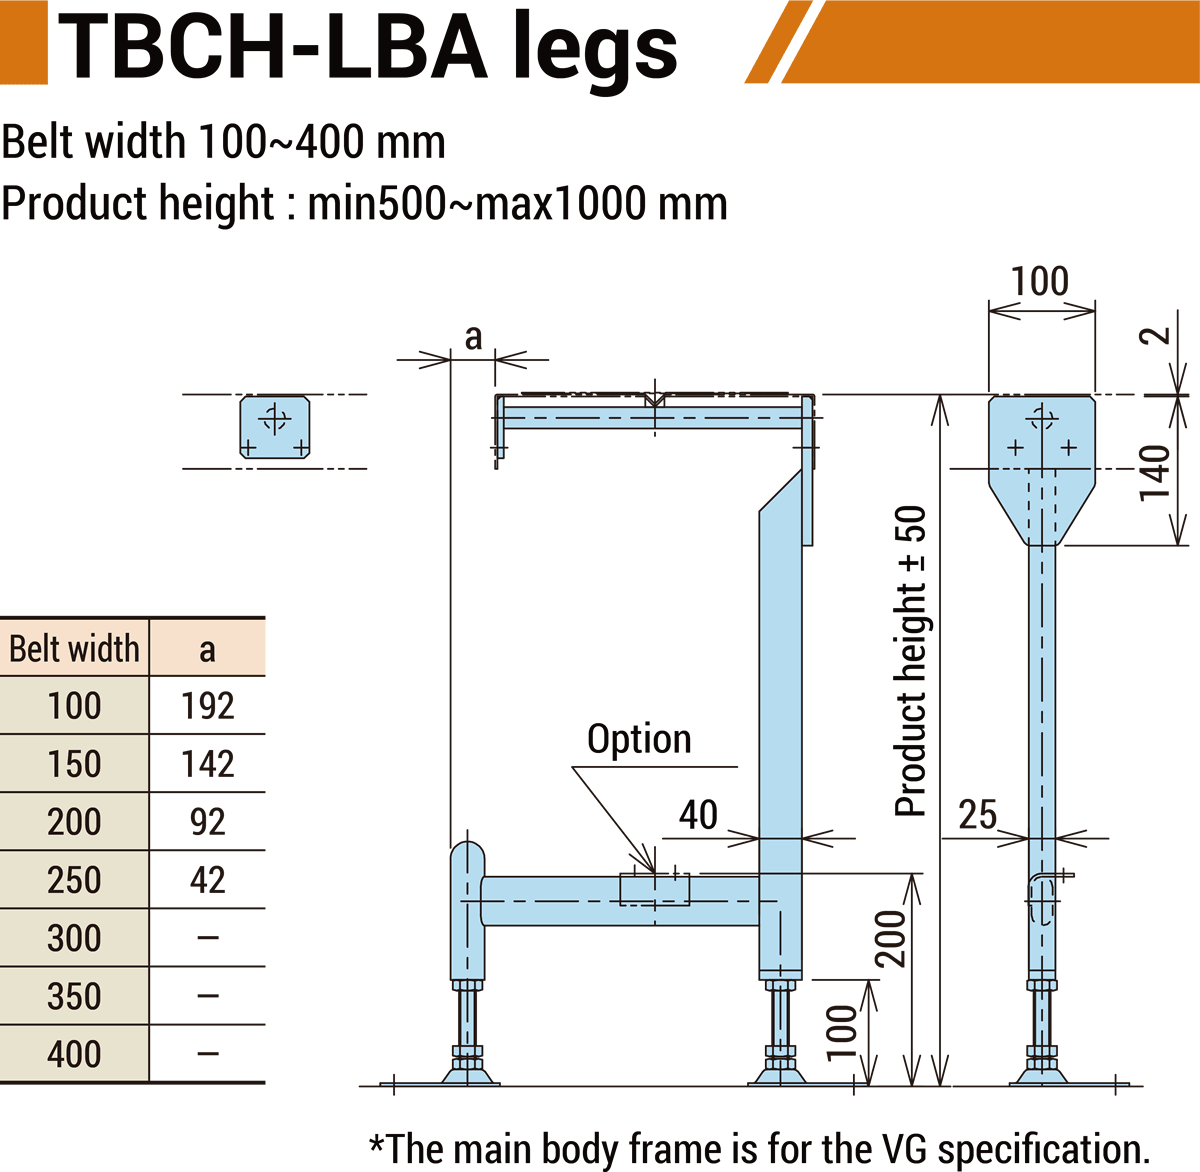 TBCH-LBA legs